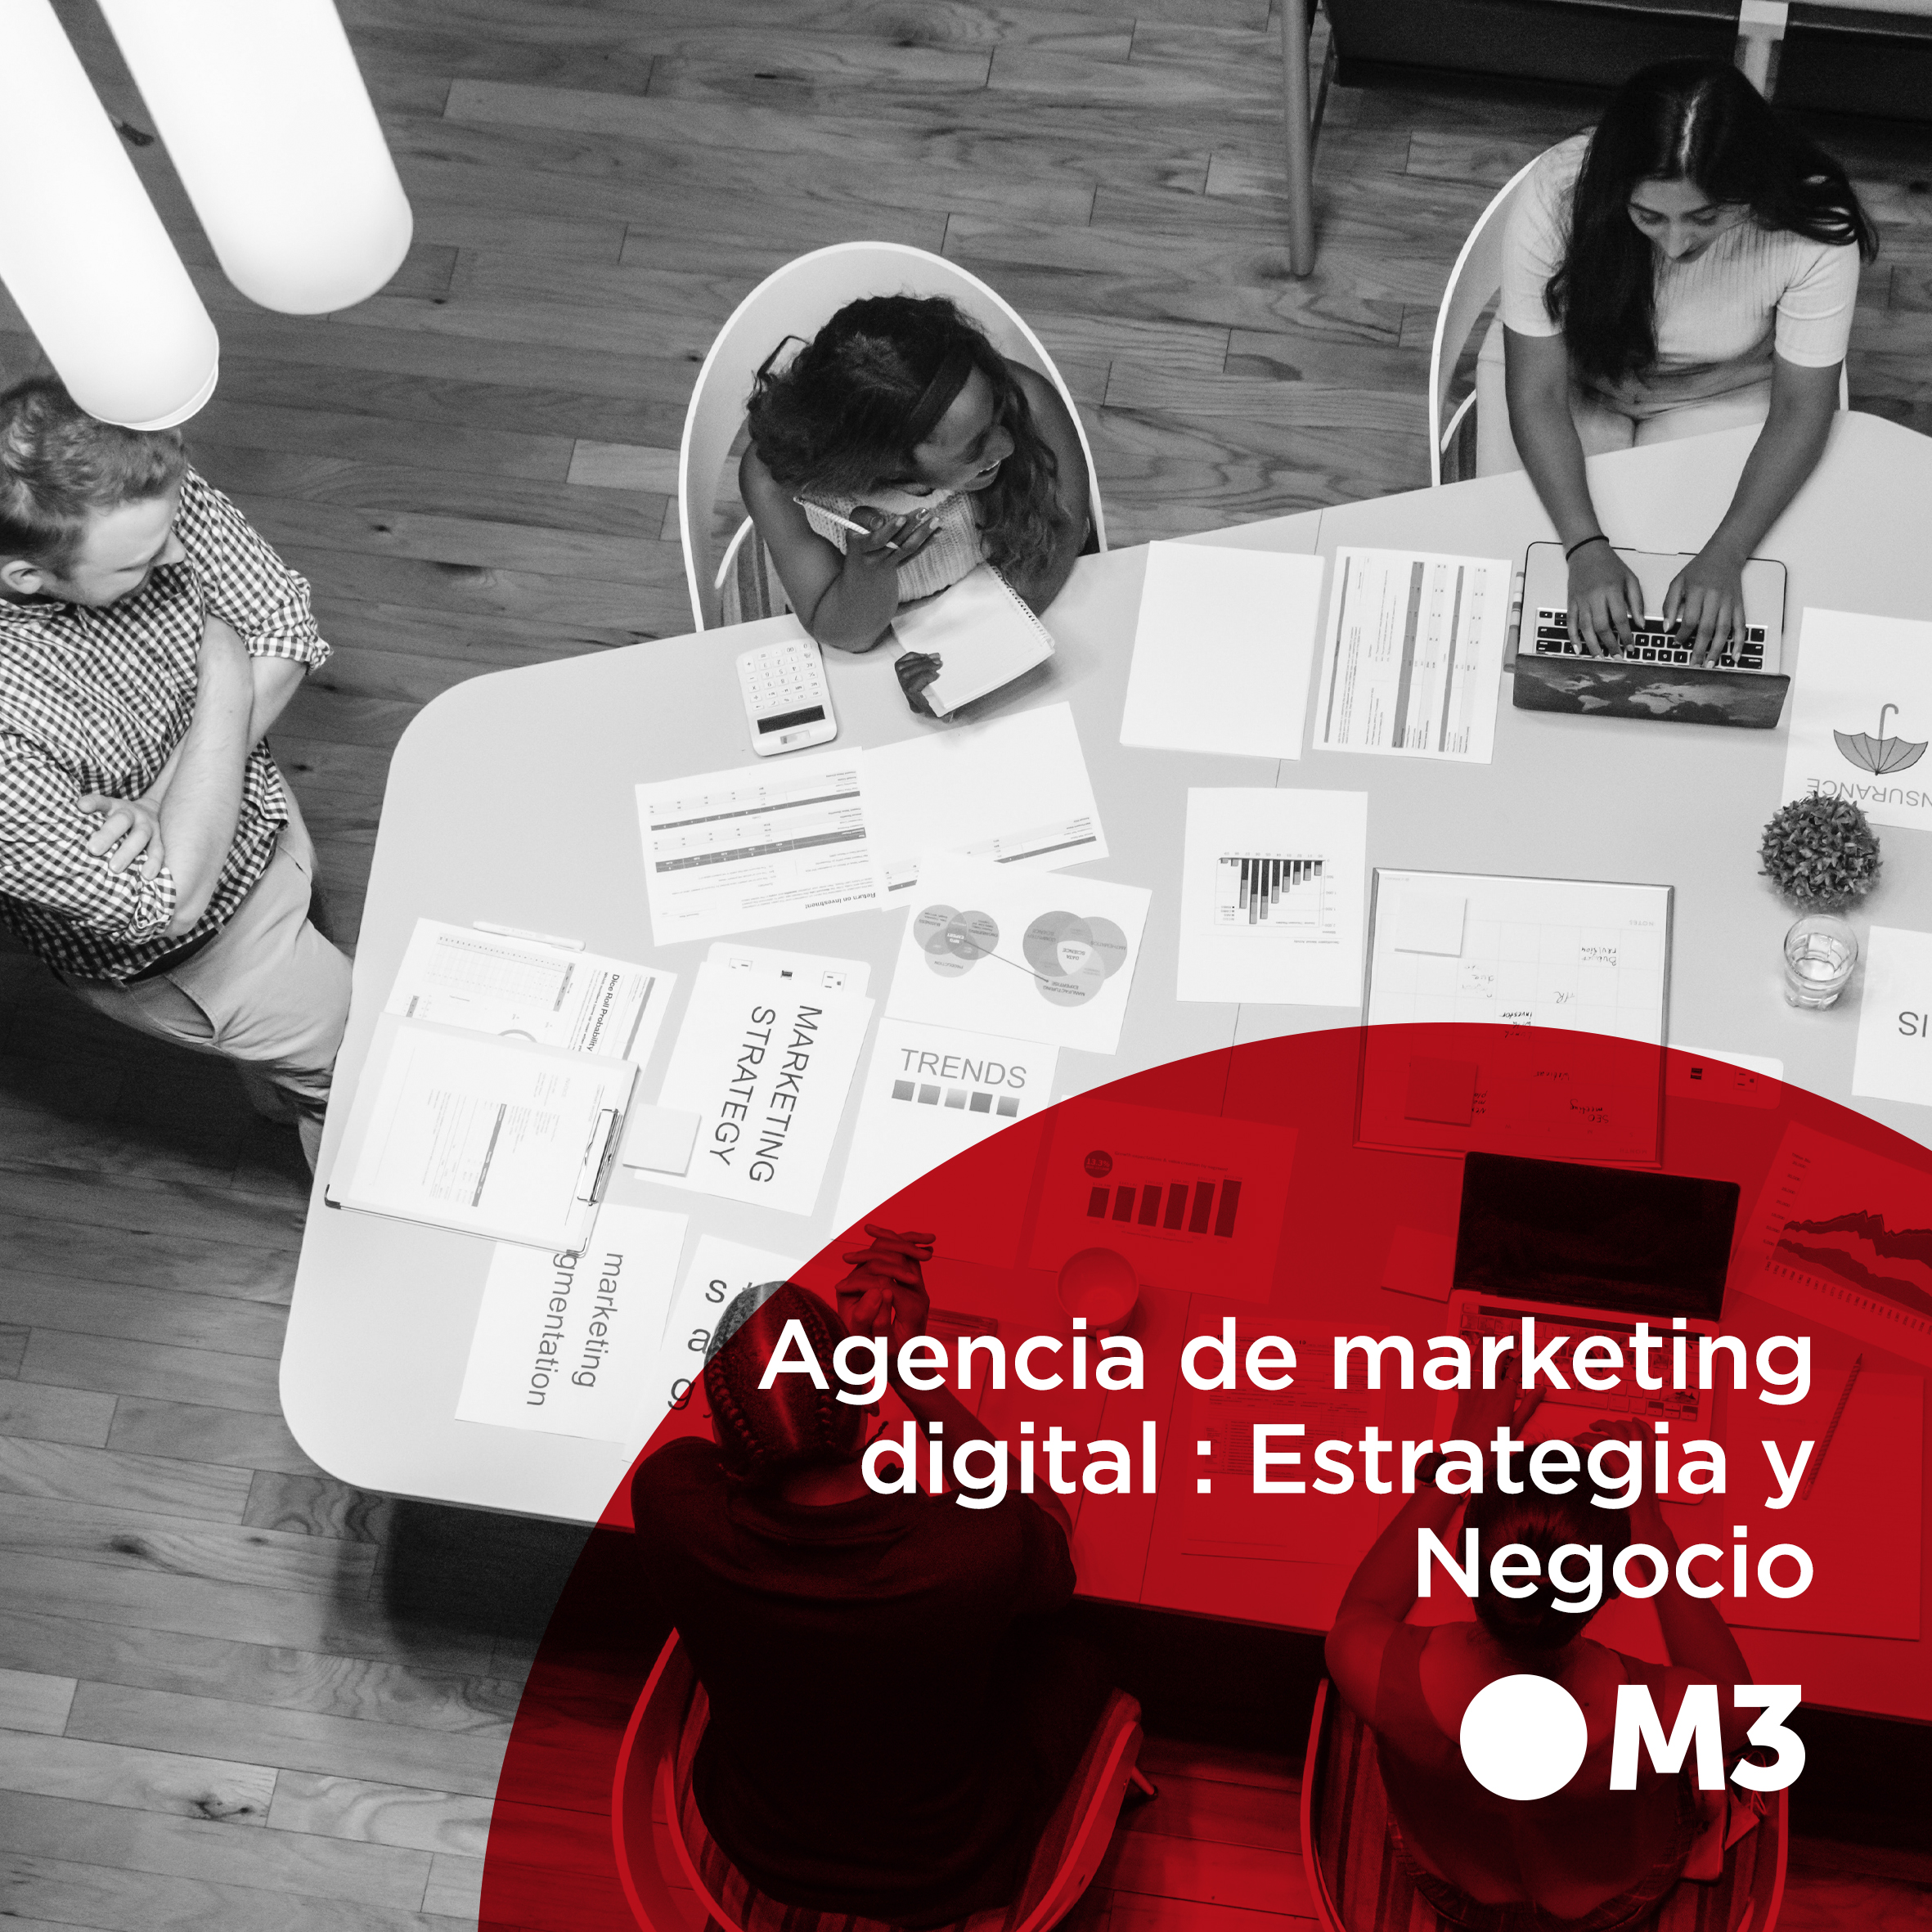 Agencia de marketing digital : Estrategia y Negocio